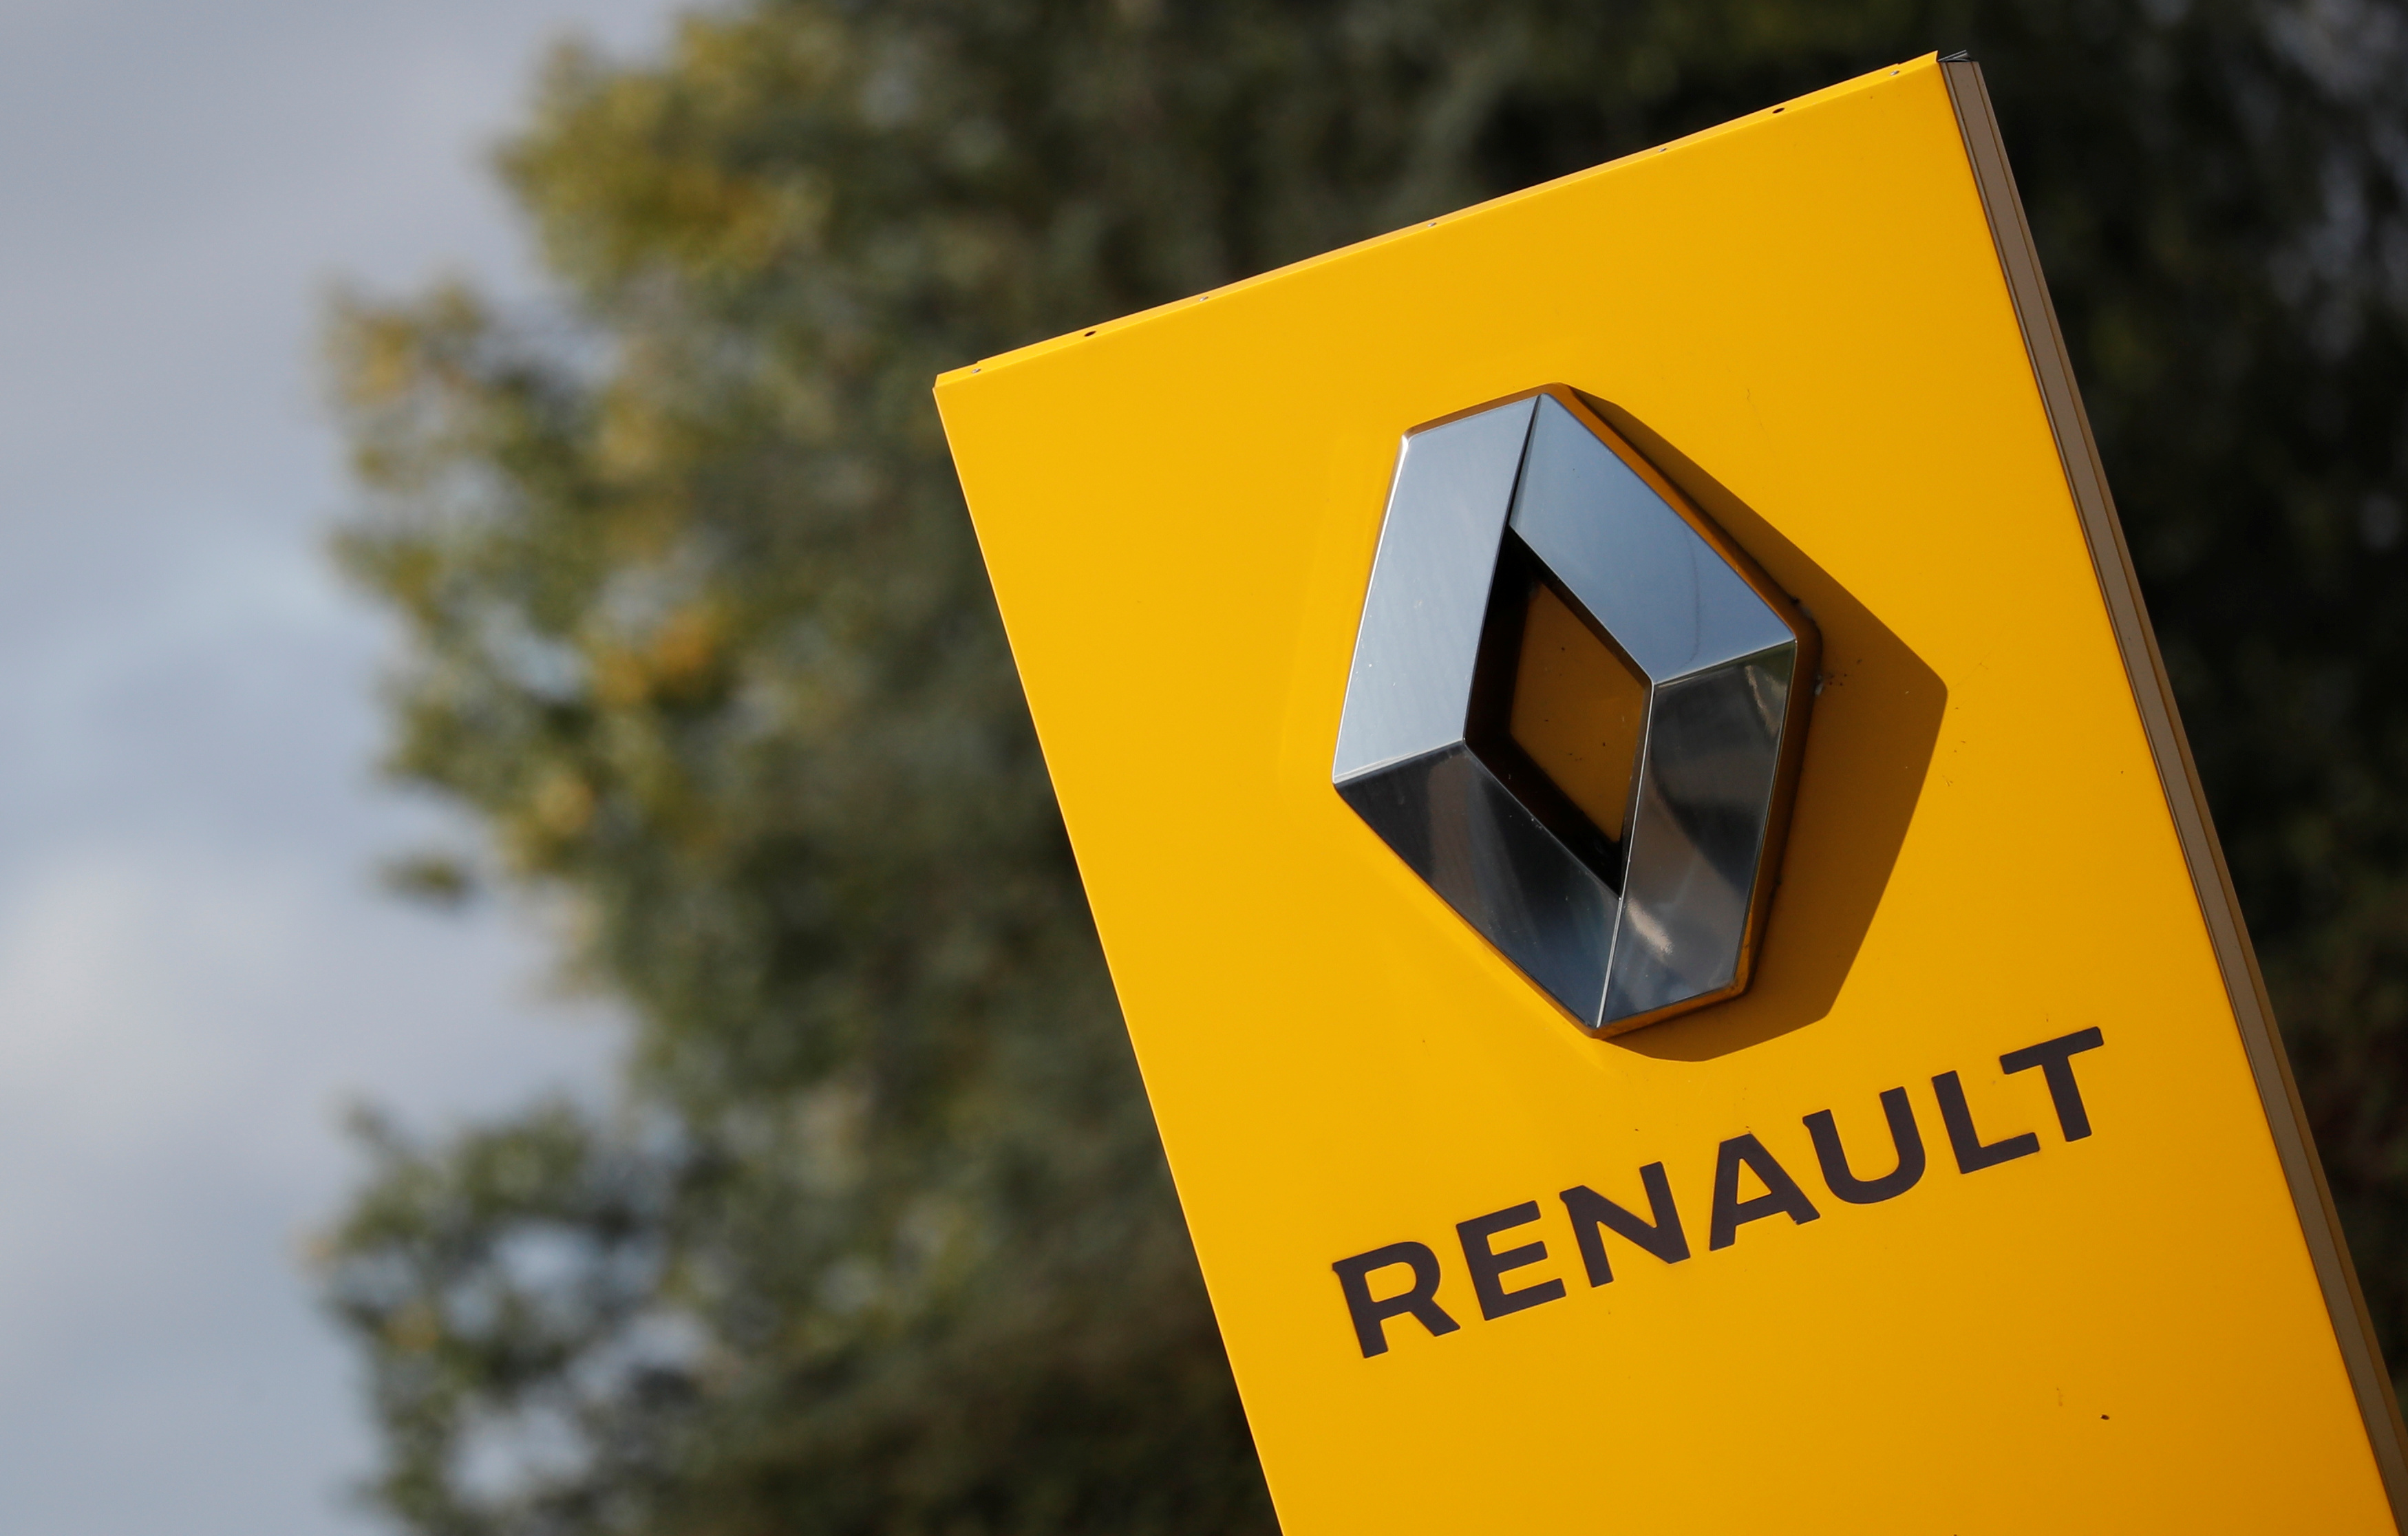 Les syndicats de Renault voteront "non" au plan d'économies, rapporte Le Figaro